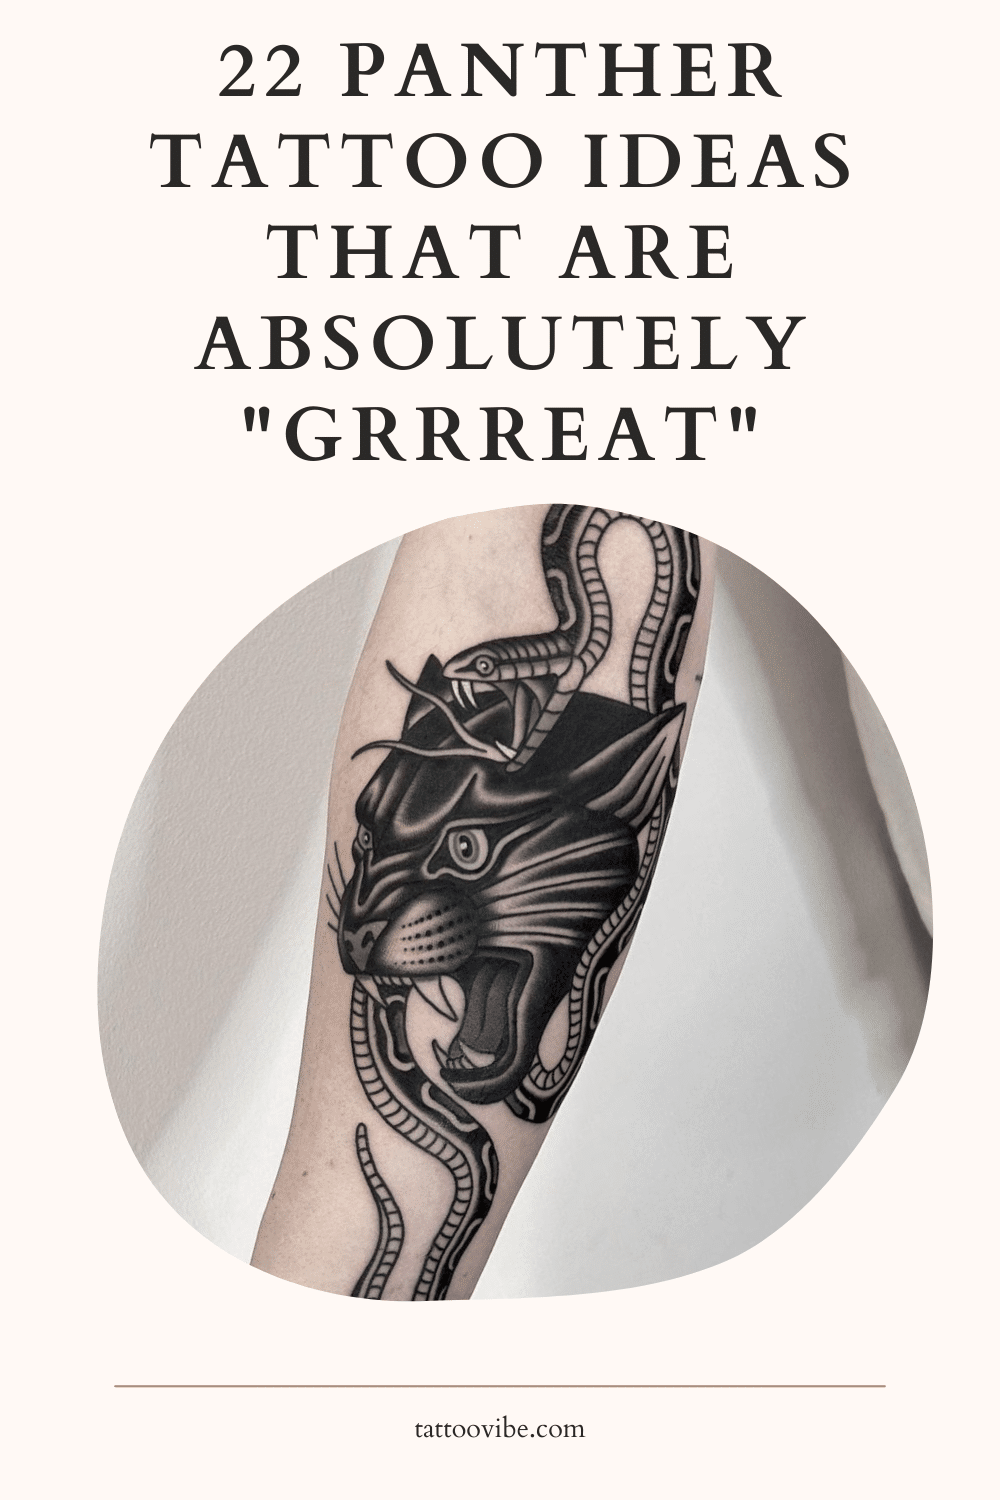 22 idées de tatouage de panthère absolument géniales